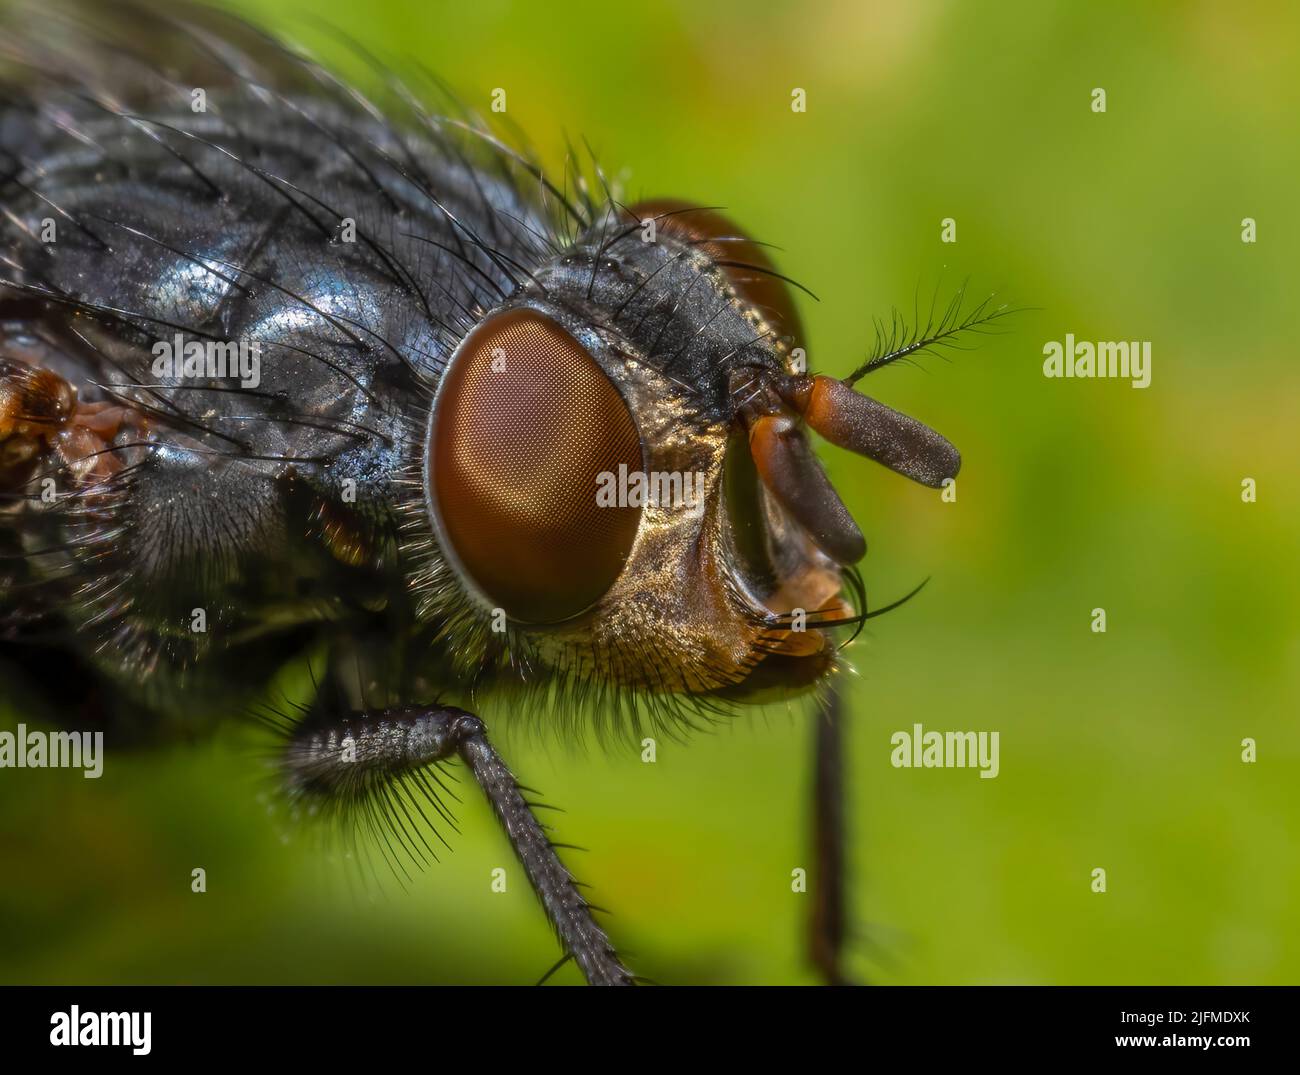 Un gros plan de la tête des espèces de mouches - Calliphora vicina montrant les grands yeux et de nombreuses protubérances Banque D'Images